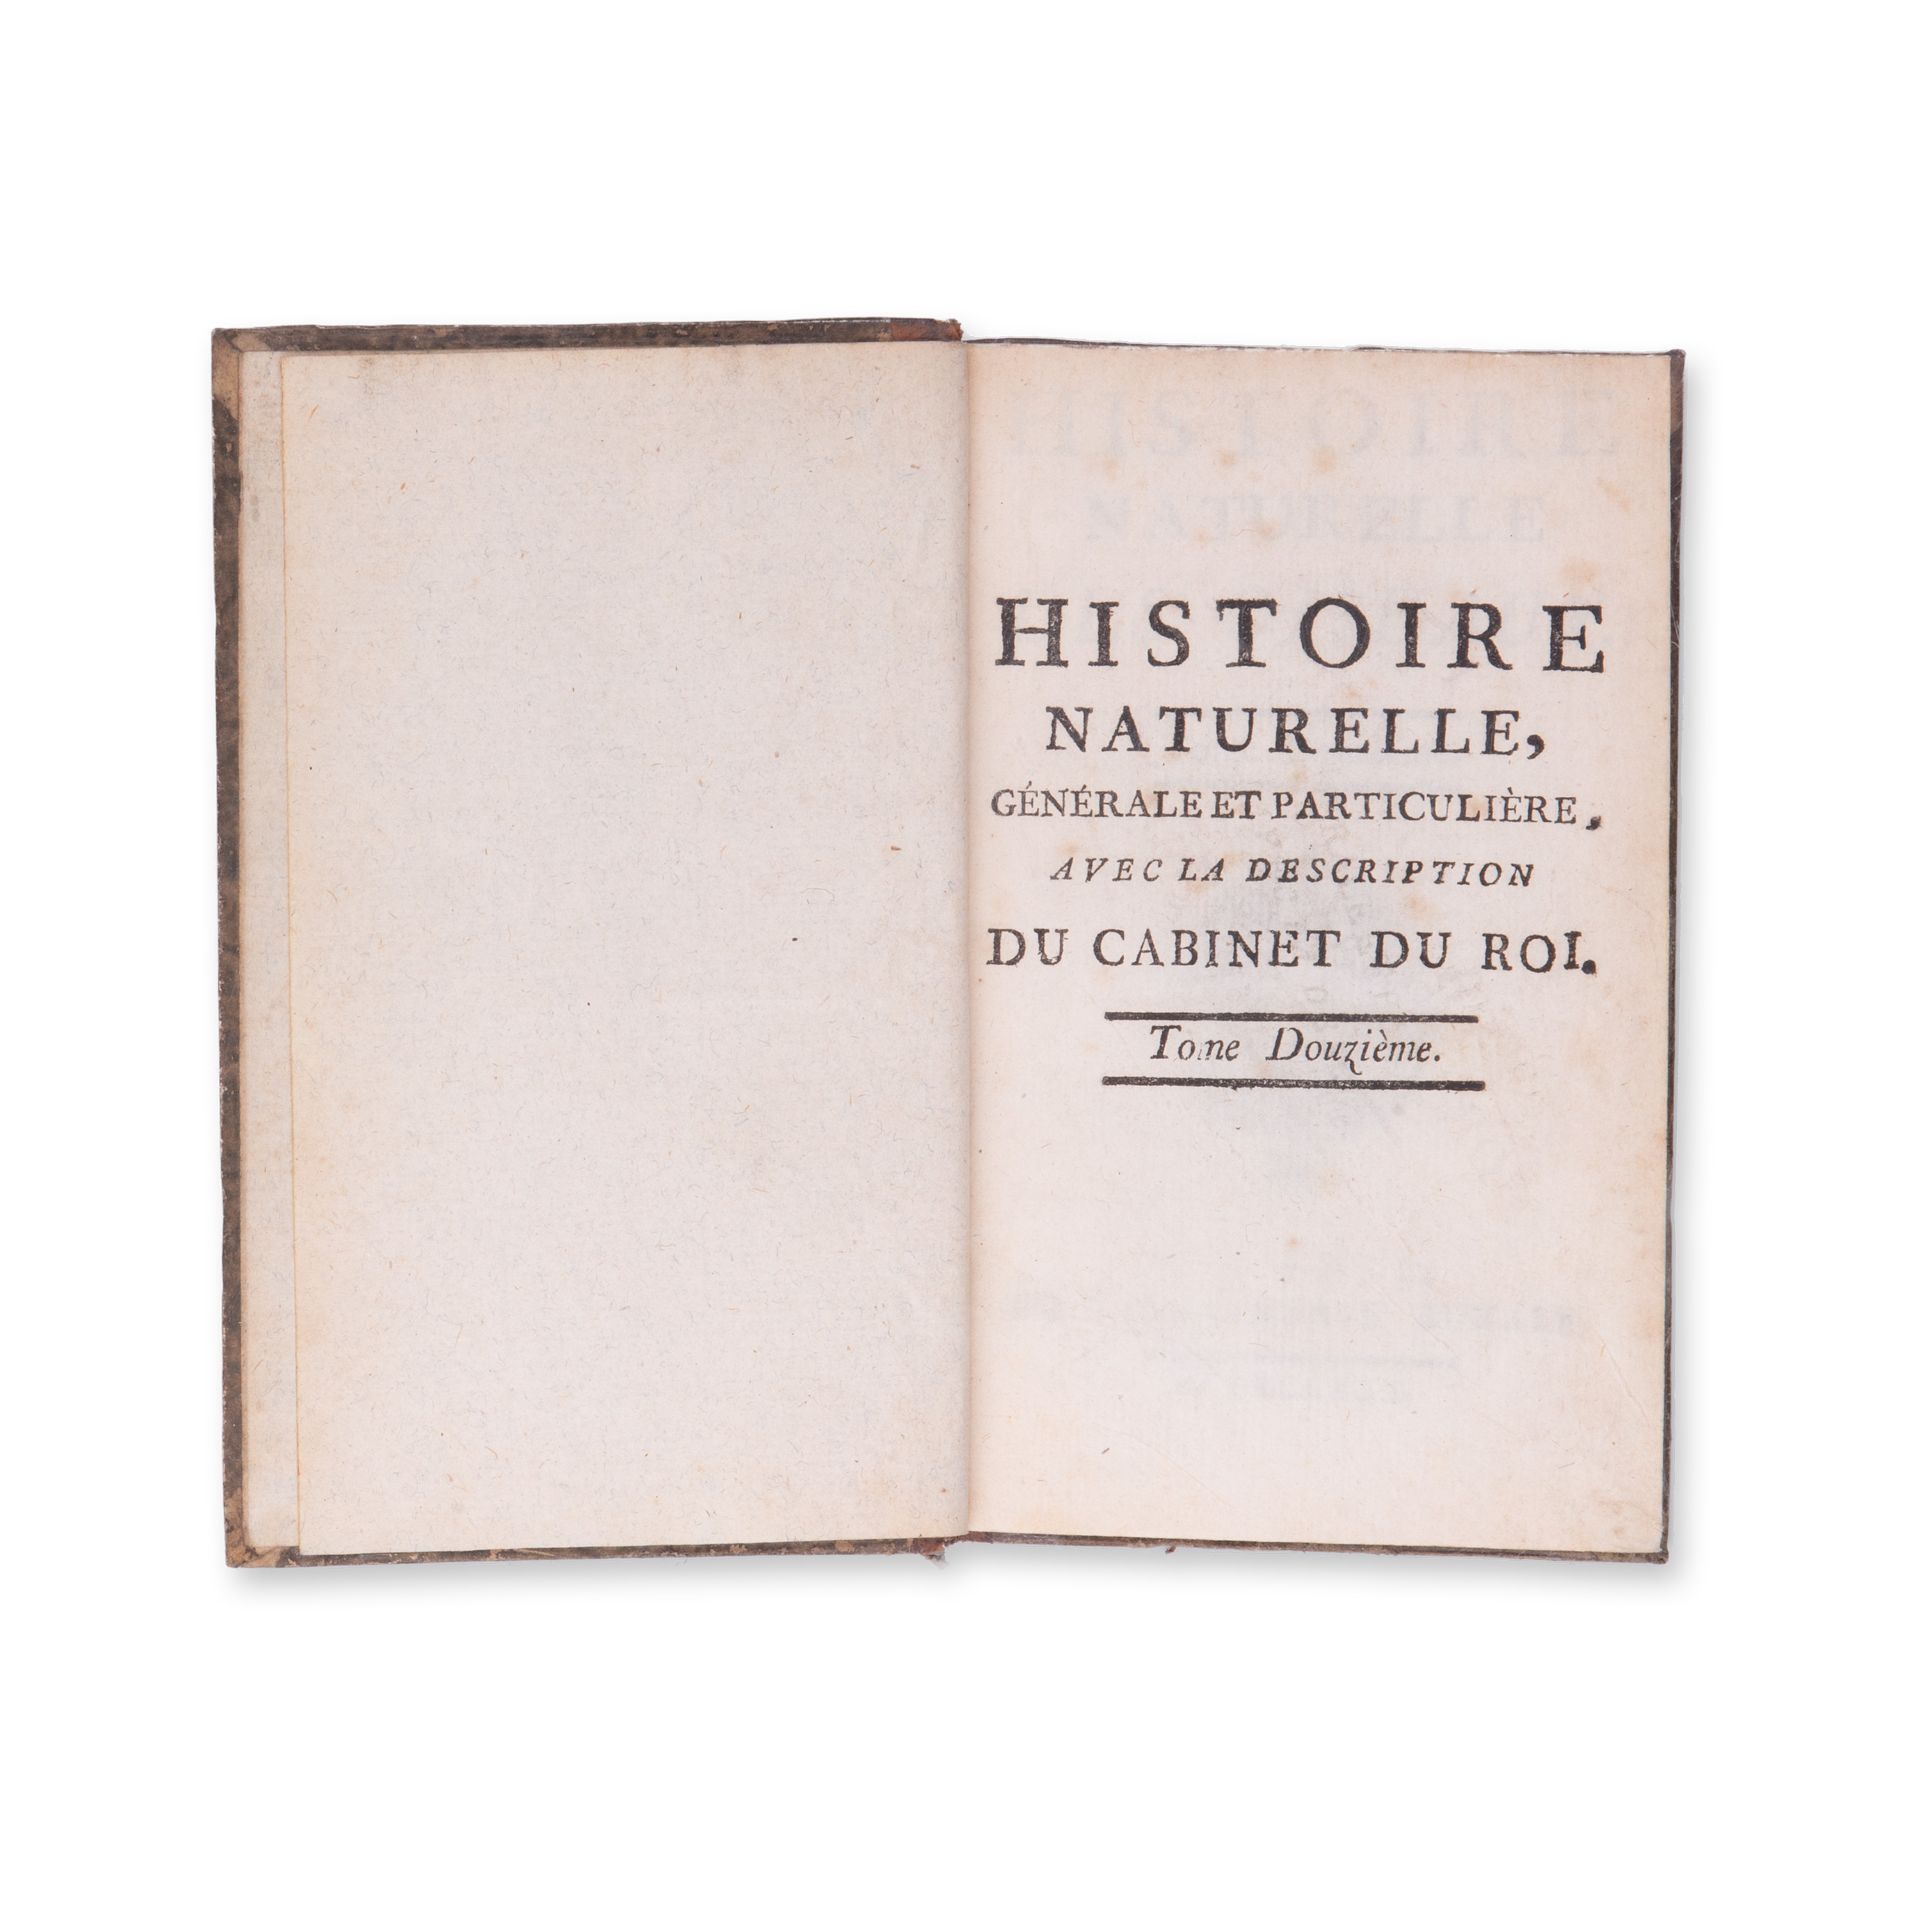 BUFFON, Georges Louis Leclerc (1707-1788): Histoire naturelle des oiseaux. Vol. XII. - Image 3 of 3